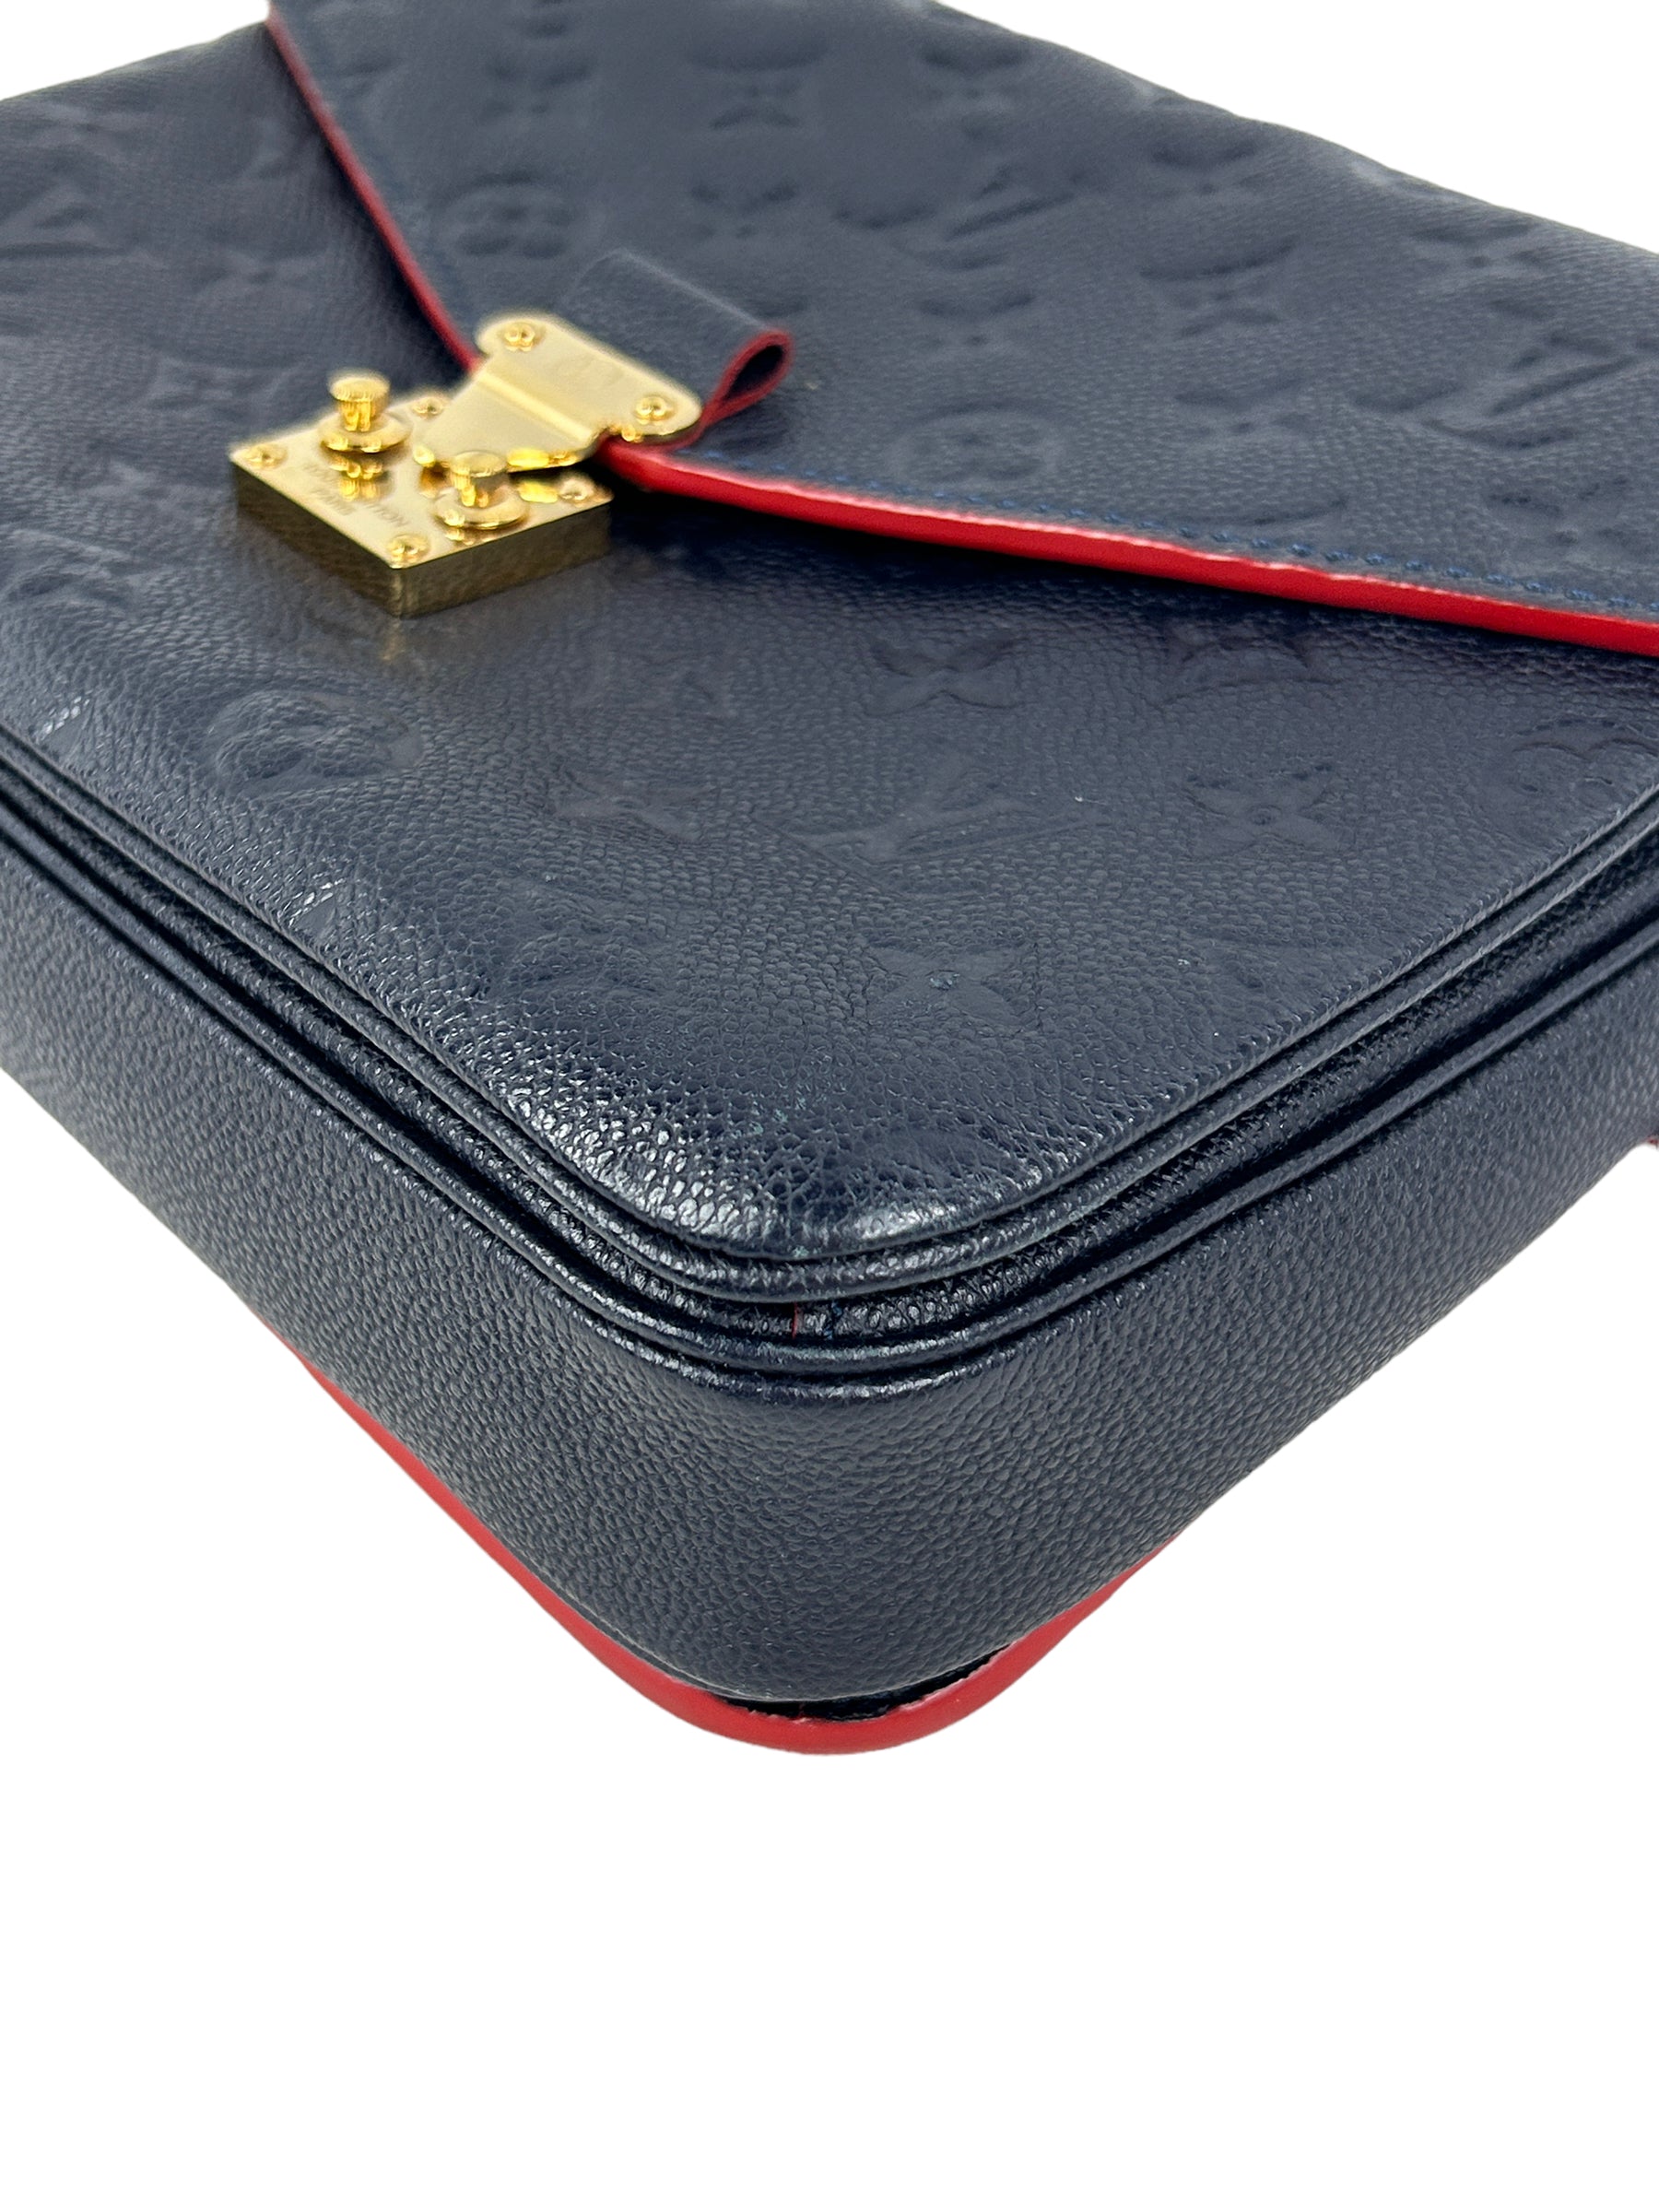 Navy/Red Empriente Leather Pochette Metis w/GHW